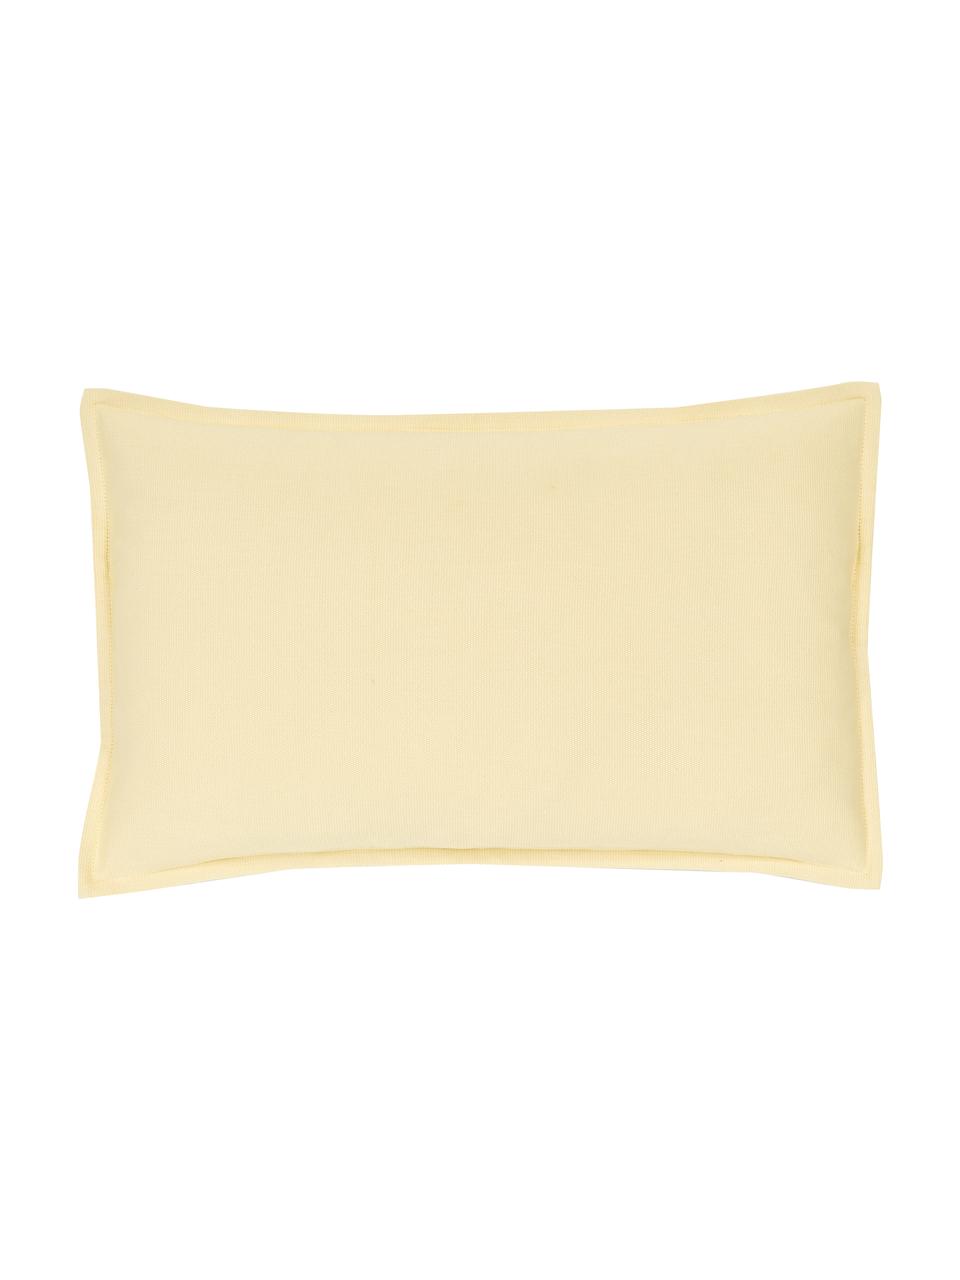 Federa arredo in cotone giallo chiaro Mads, 100% cotone, Giallo, Larg. 30 x Lung. 50 cm